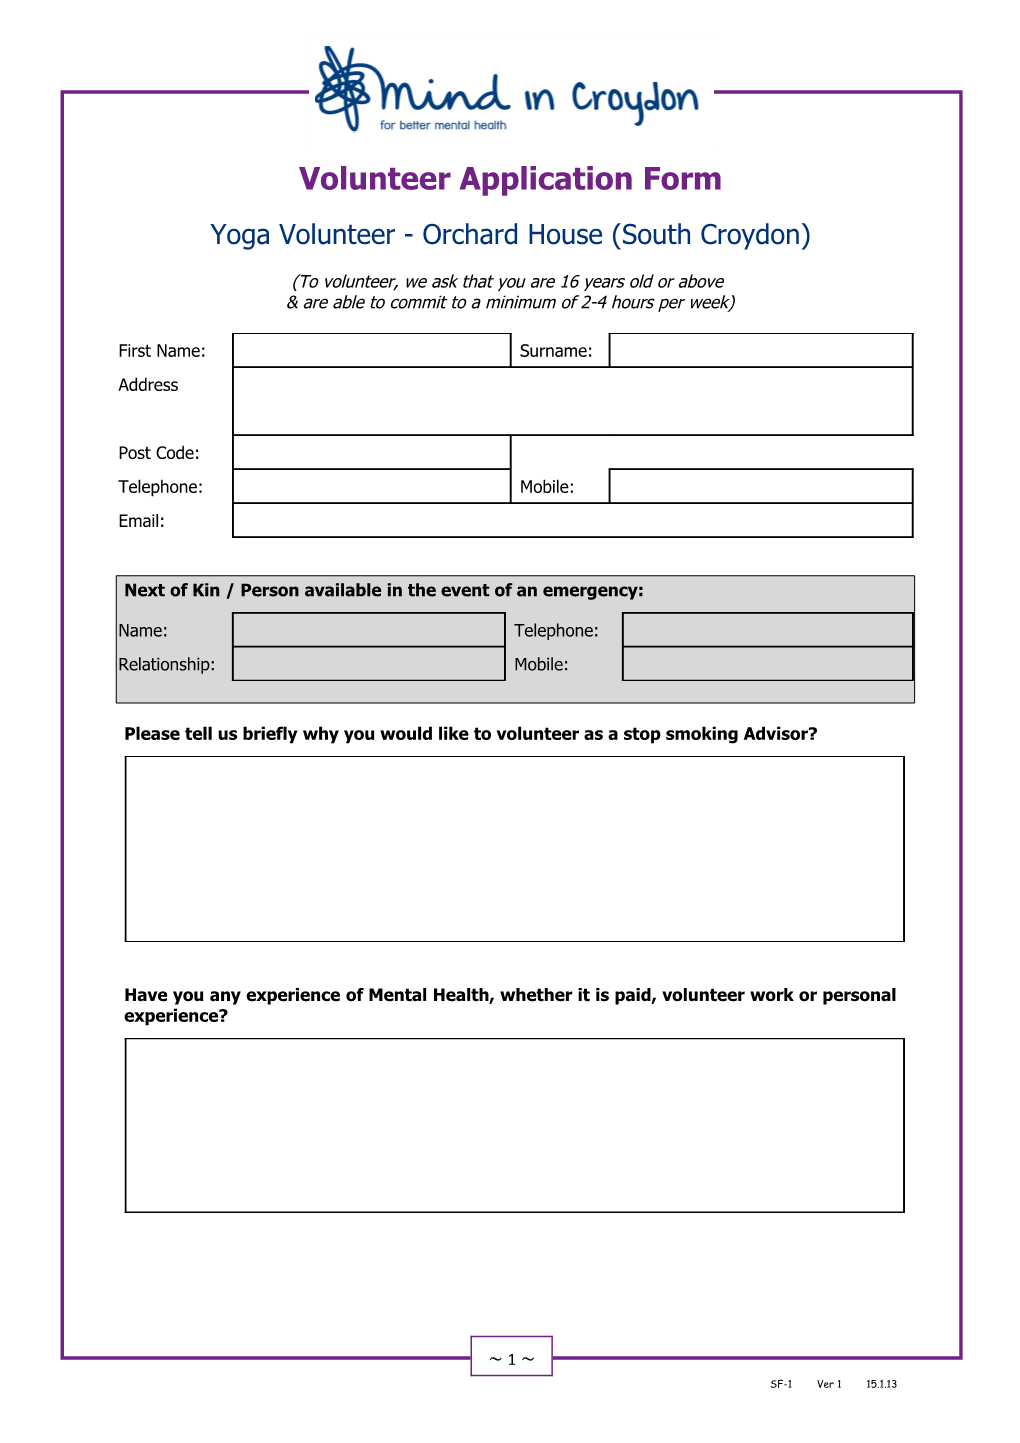 Volunteer Application Form s11